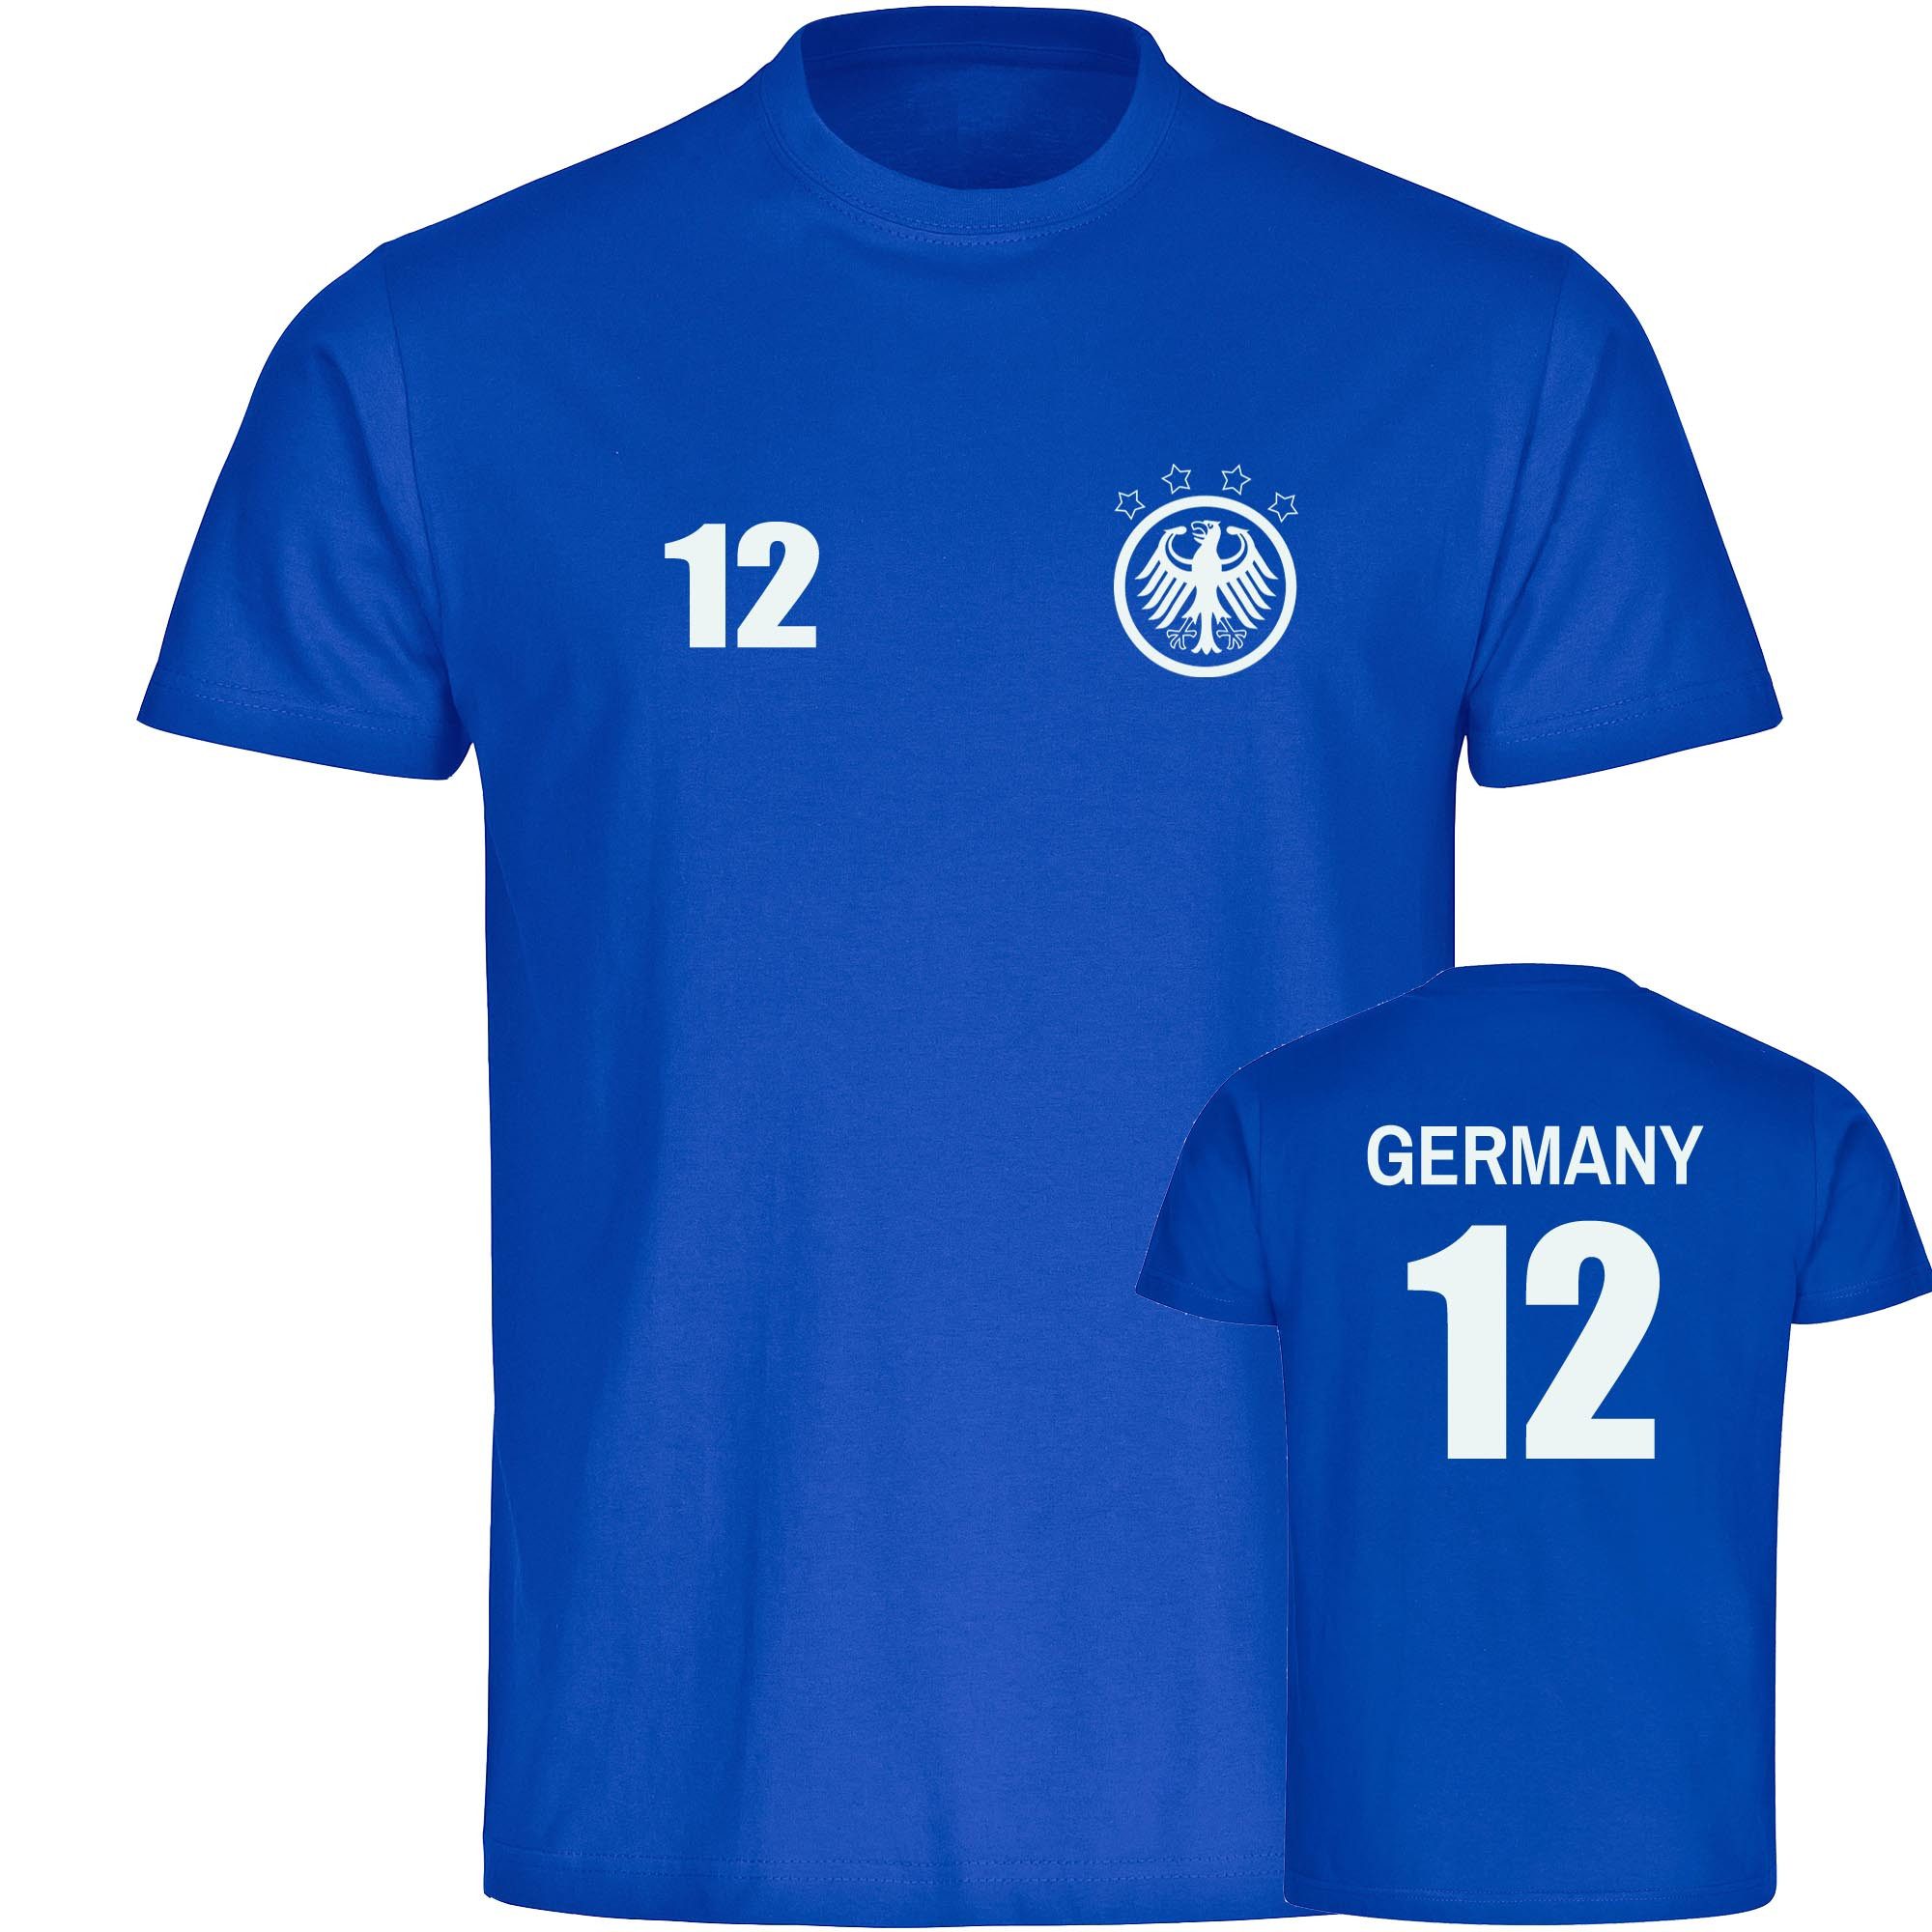 multifanshop T-Shirt Herren Germany - Adler Retro Trikot 12 - Männer